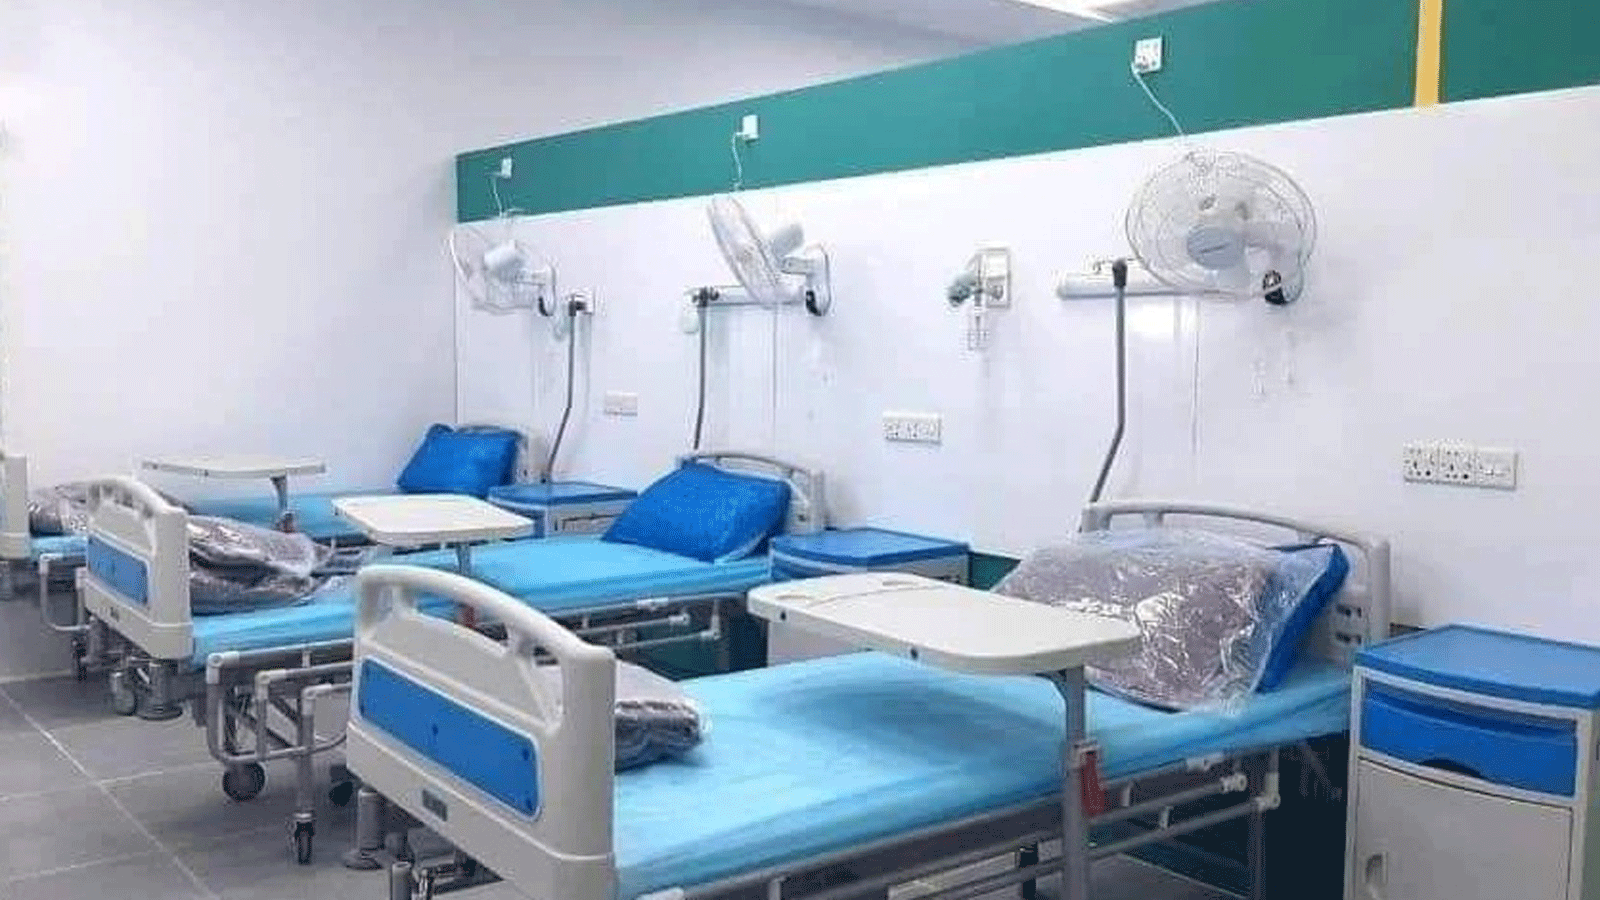 التجهيزات في مستشفى عراقي جديد على وشك الانجاز لاستقبال المرضى